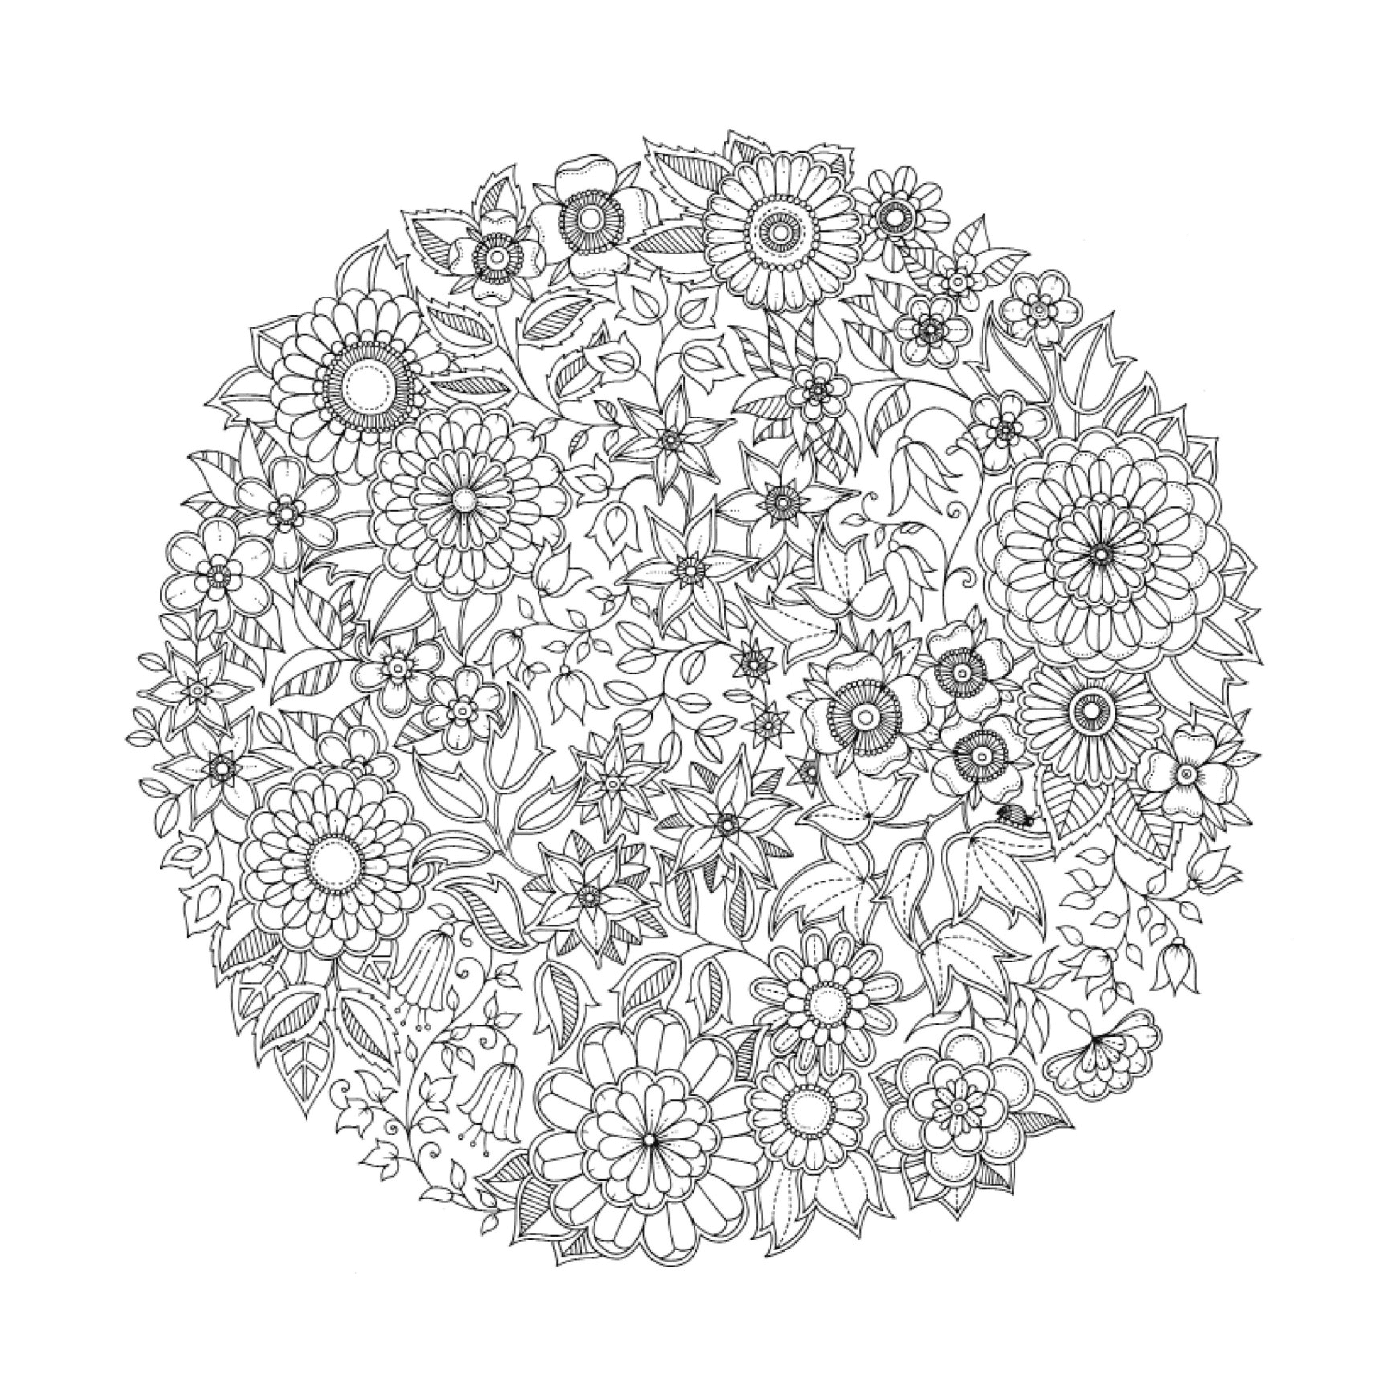  Циркулярная модель цветков черно-белого цвета 